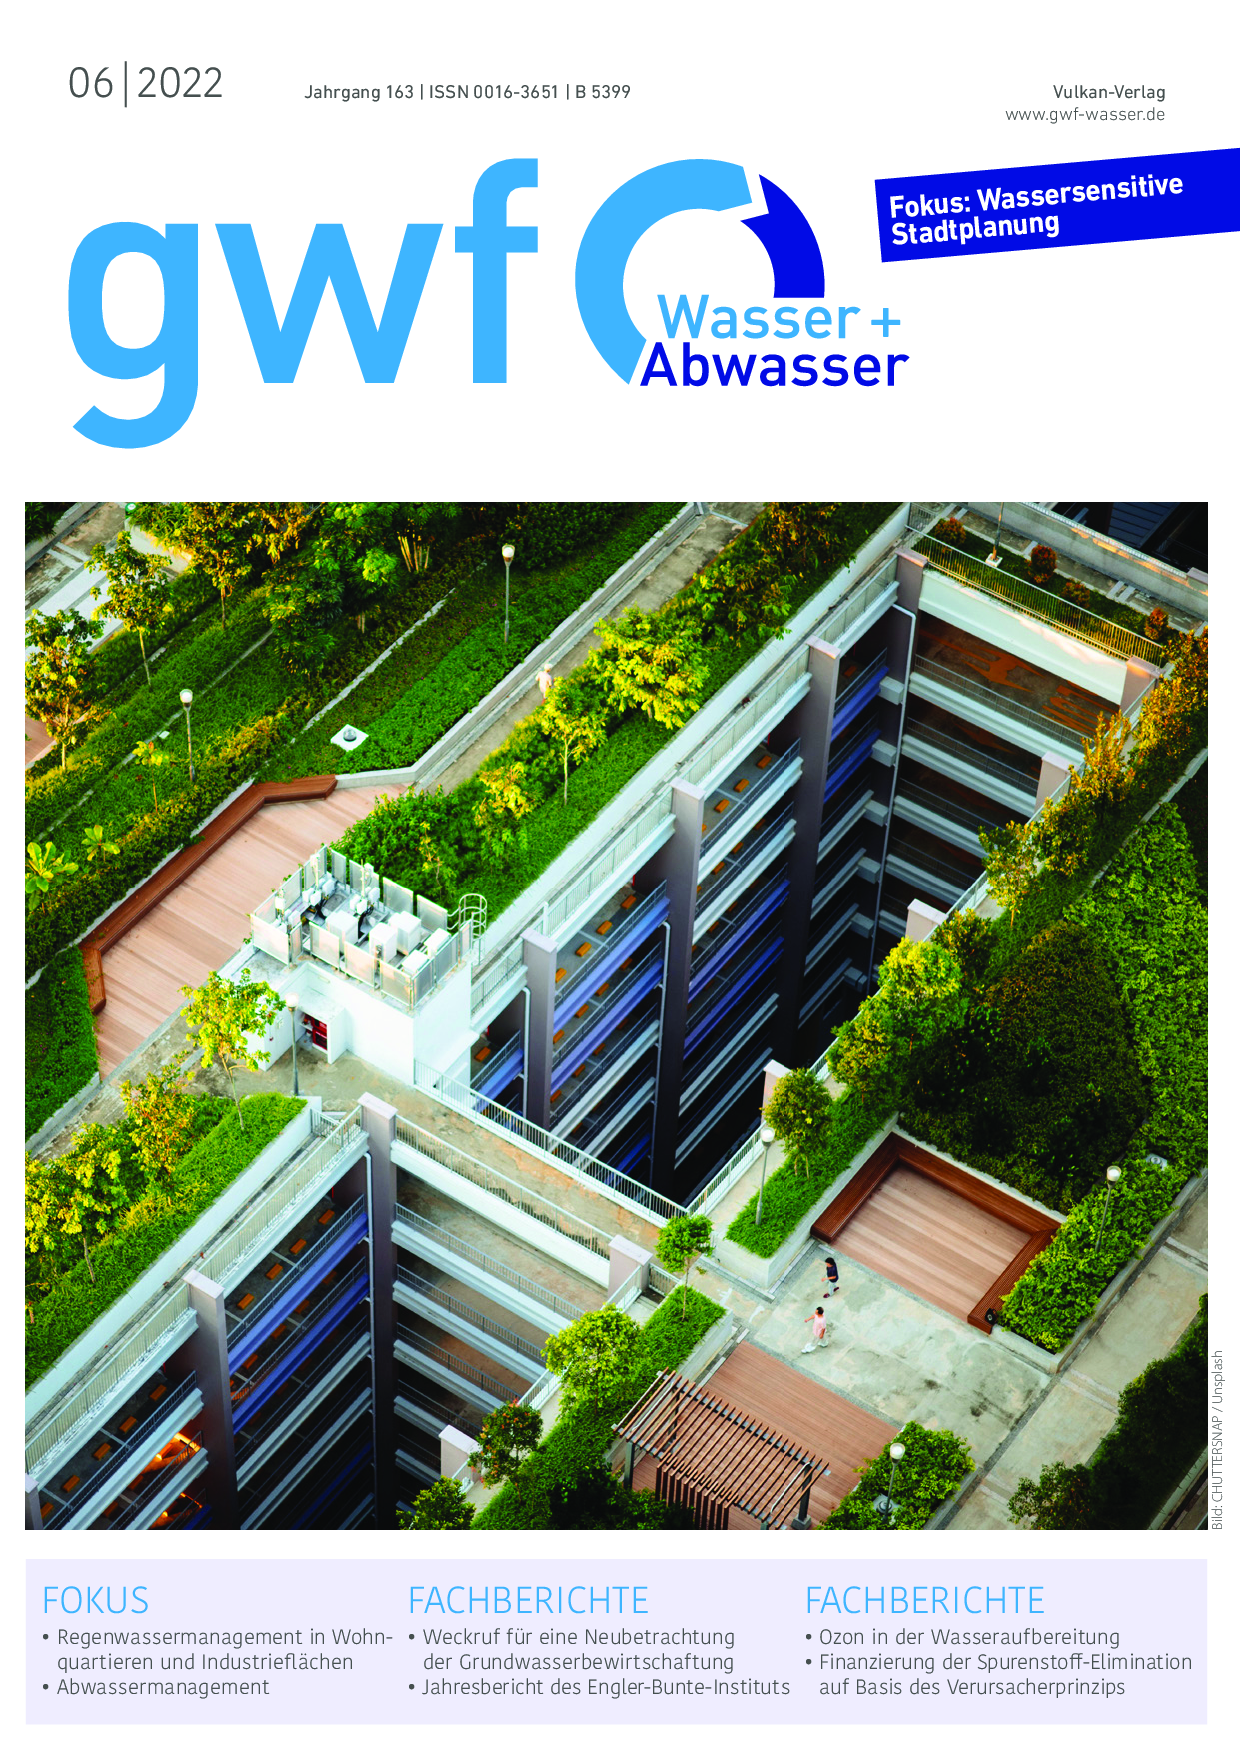 gwf - Wasser|Abwasser - 06 2022